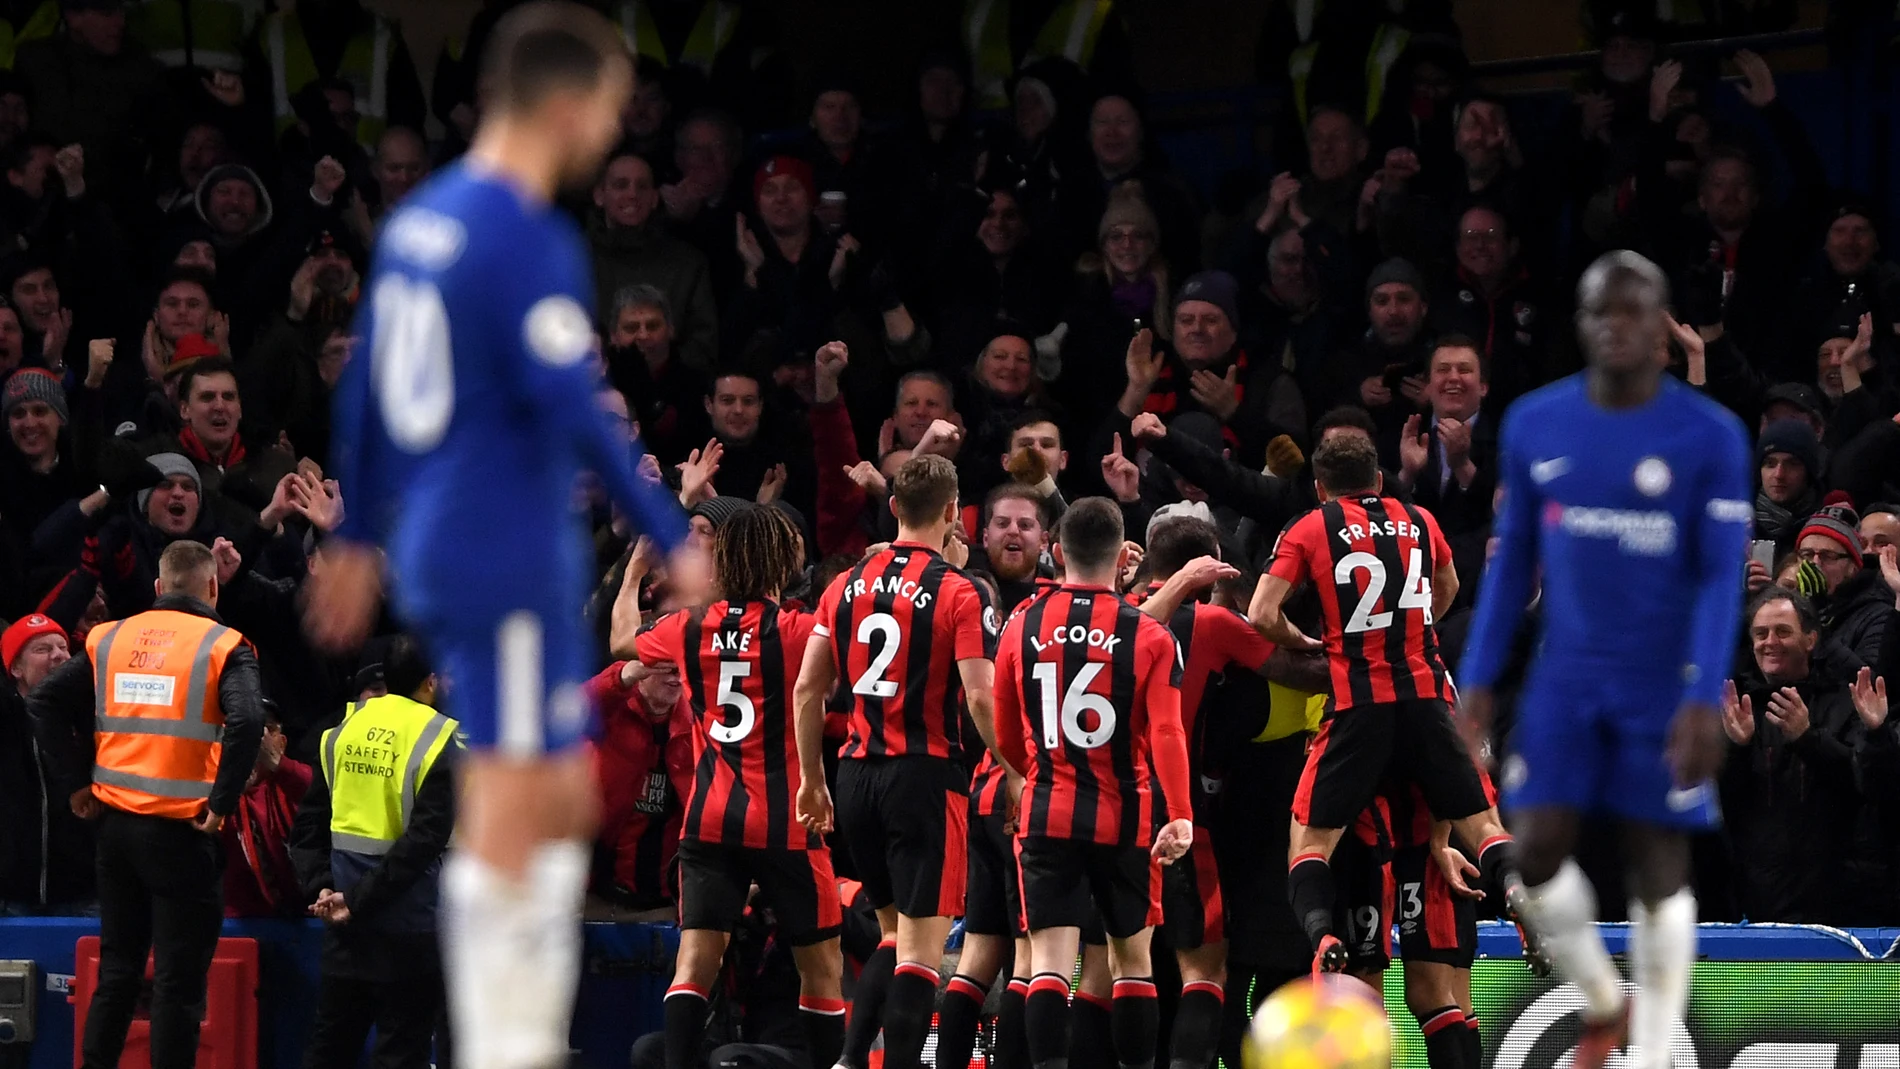 Los jugadores del Bournemouth celebran uno de los goles ante el Chelsea